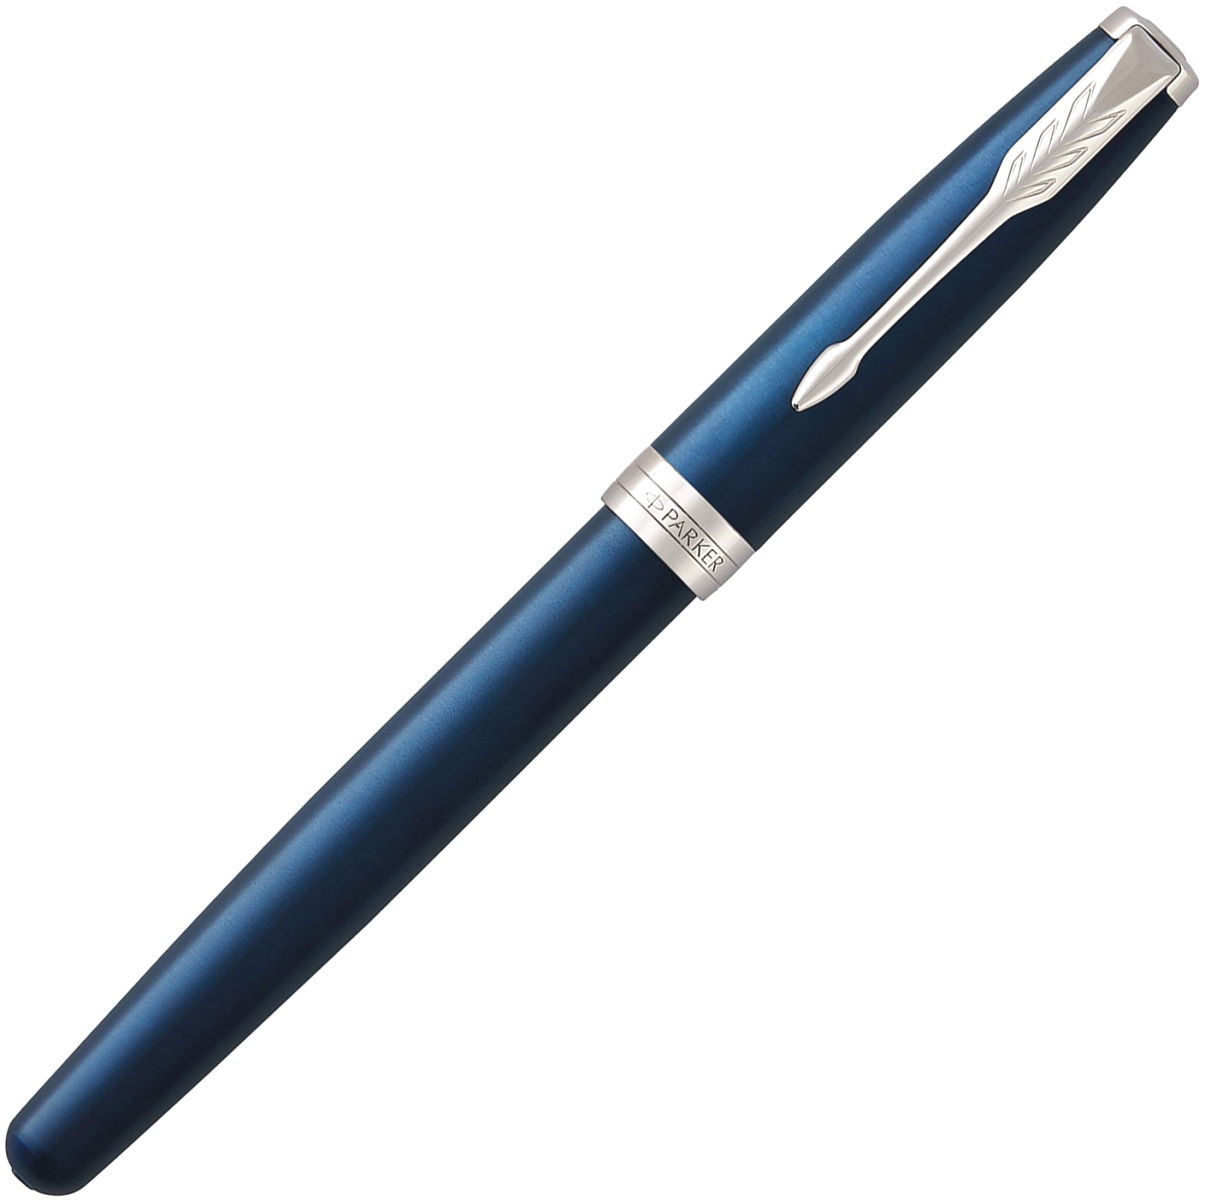  Ручка-роллер Parker Sonnet Core T539, Lacquer Blue CT, фото 2